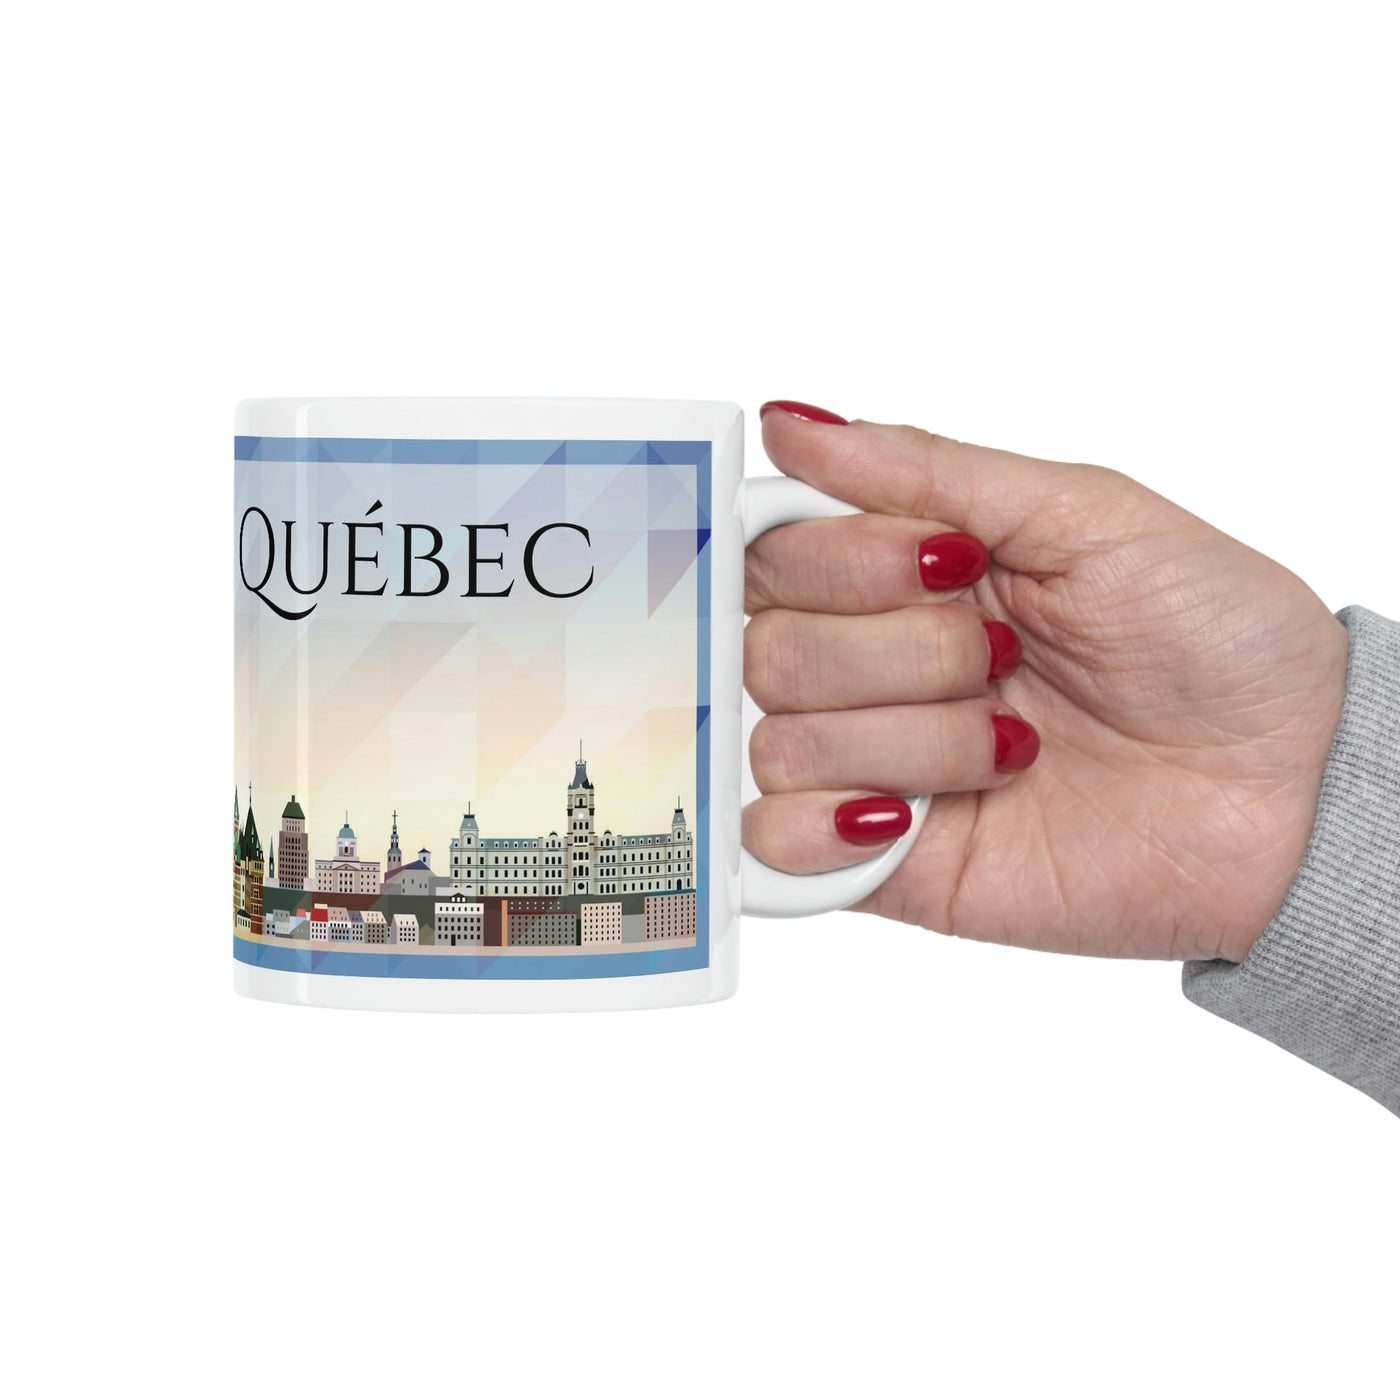 Québec Canada Coffee Mug - Ezra's Clothing